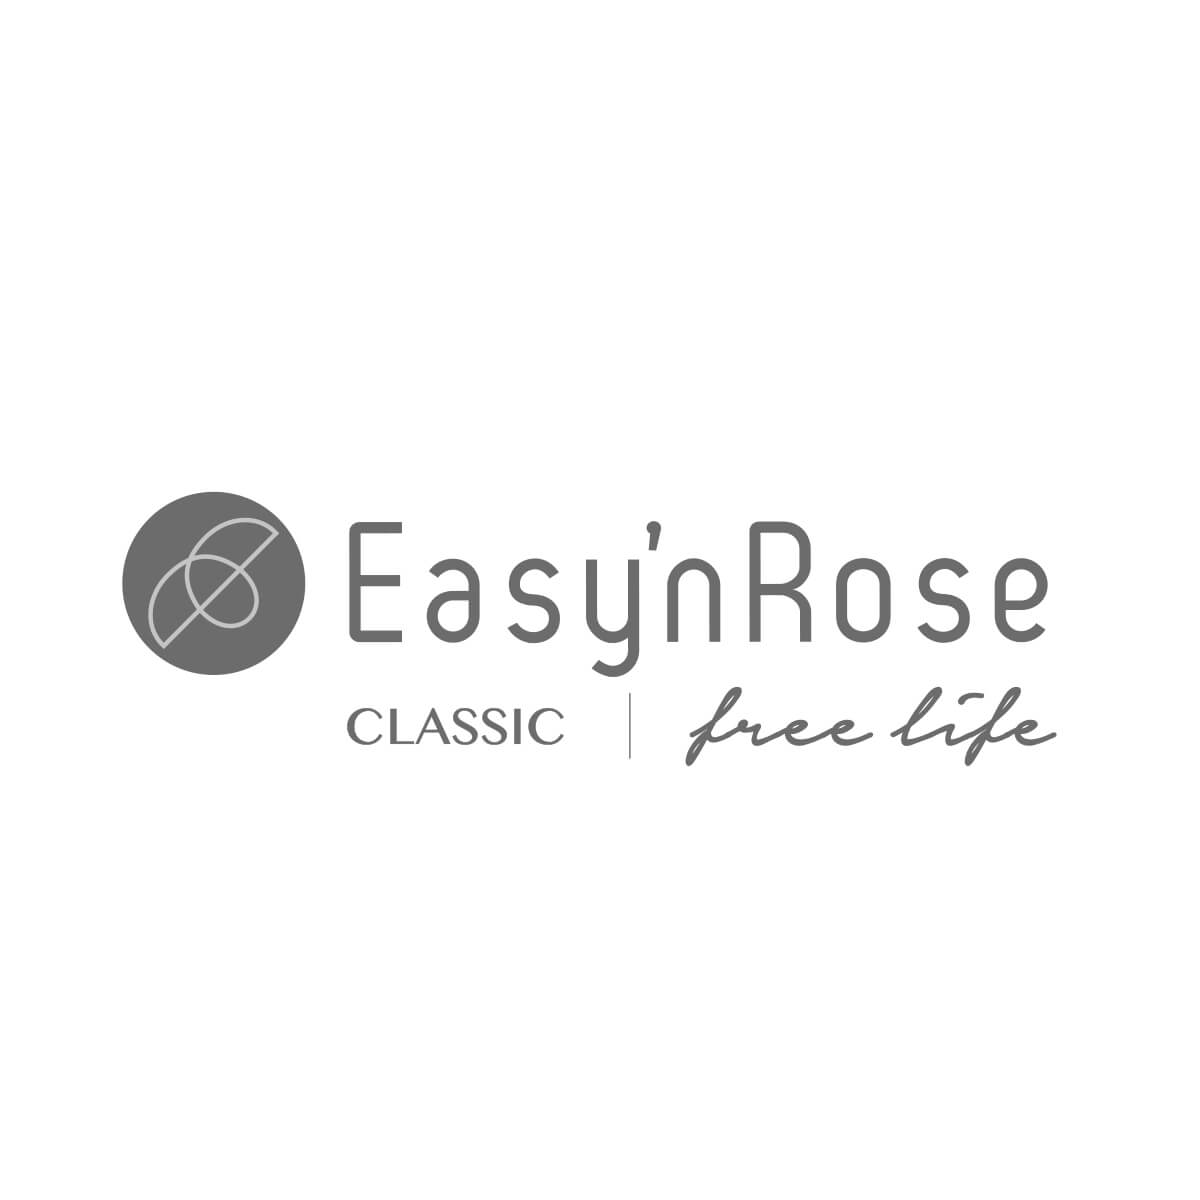 Easynrose-logo